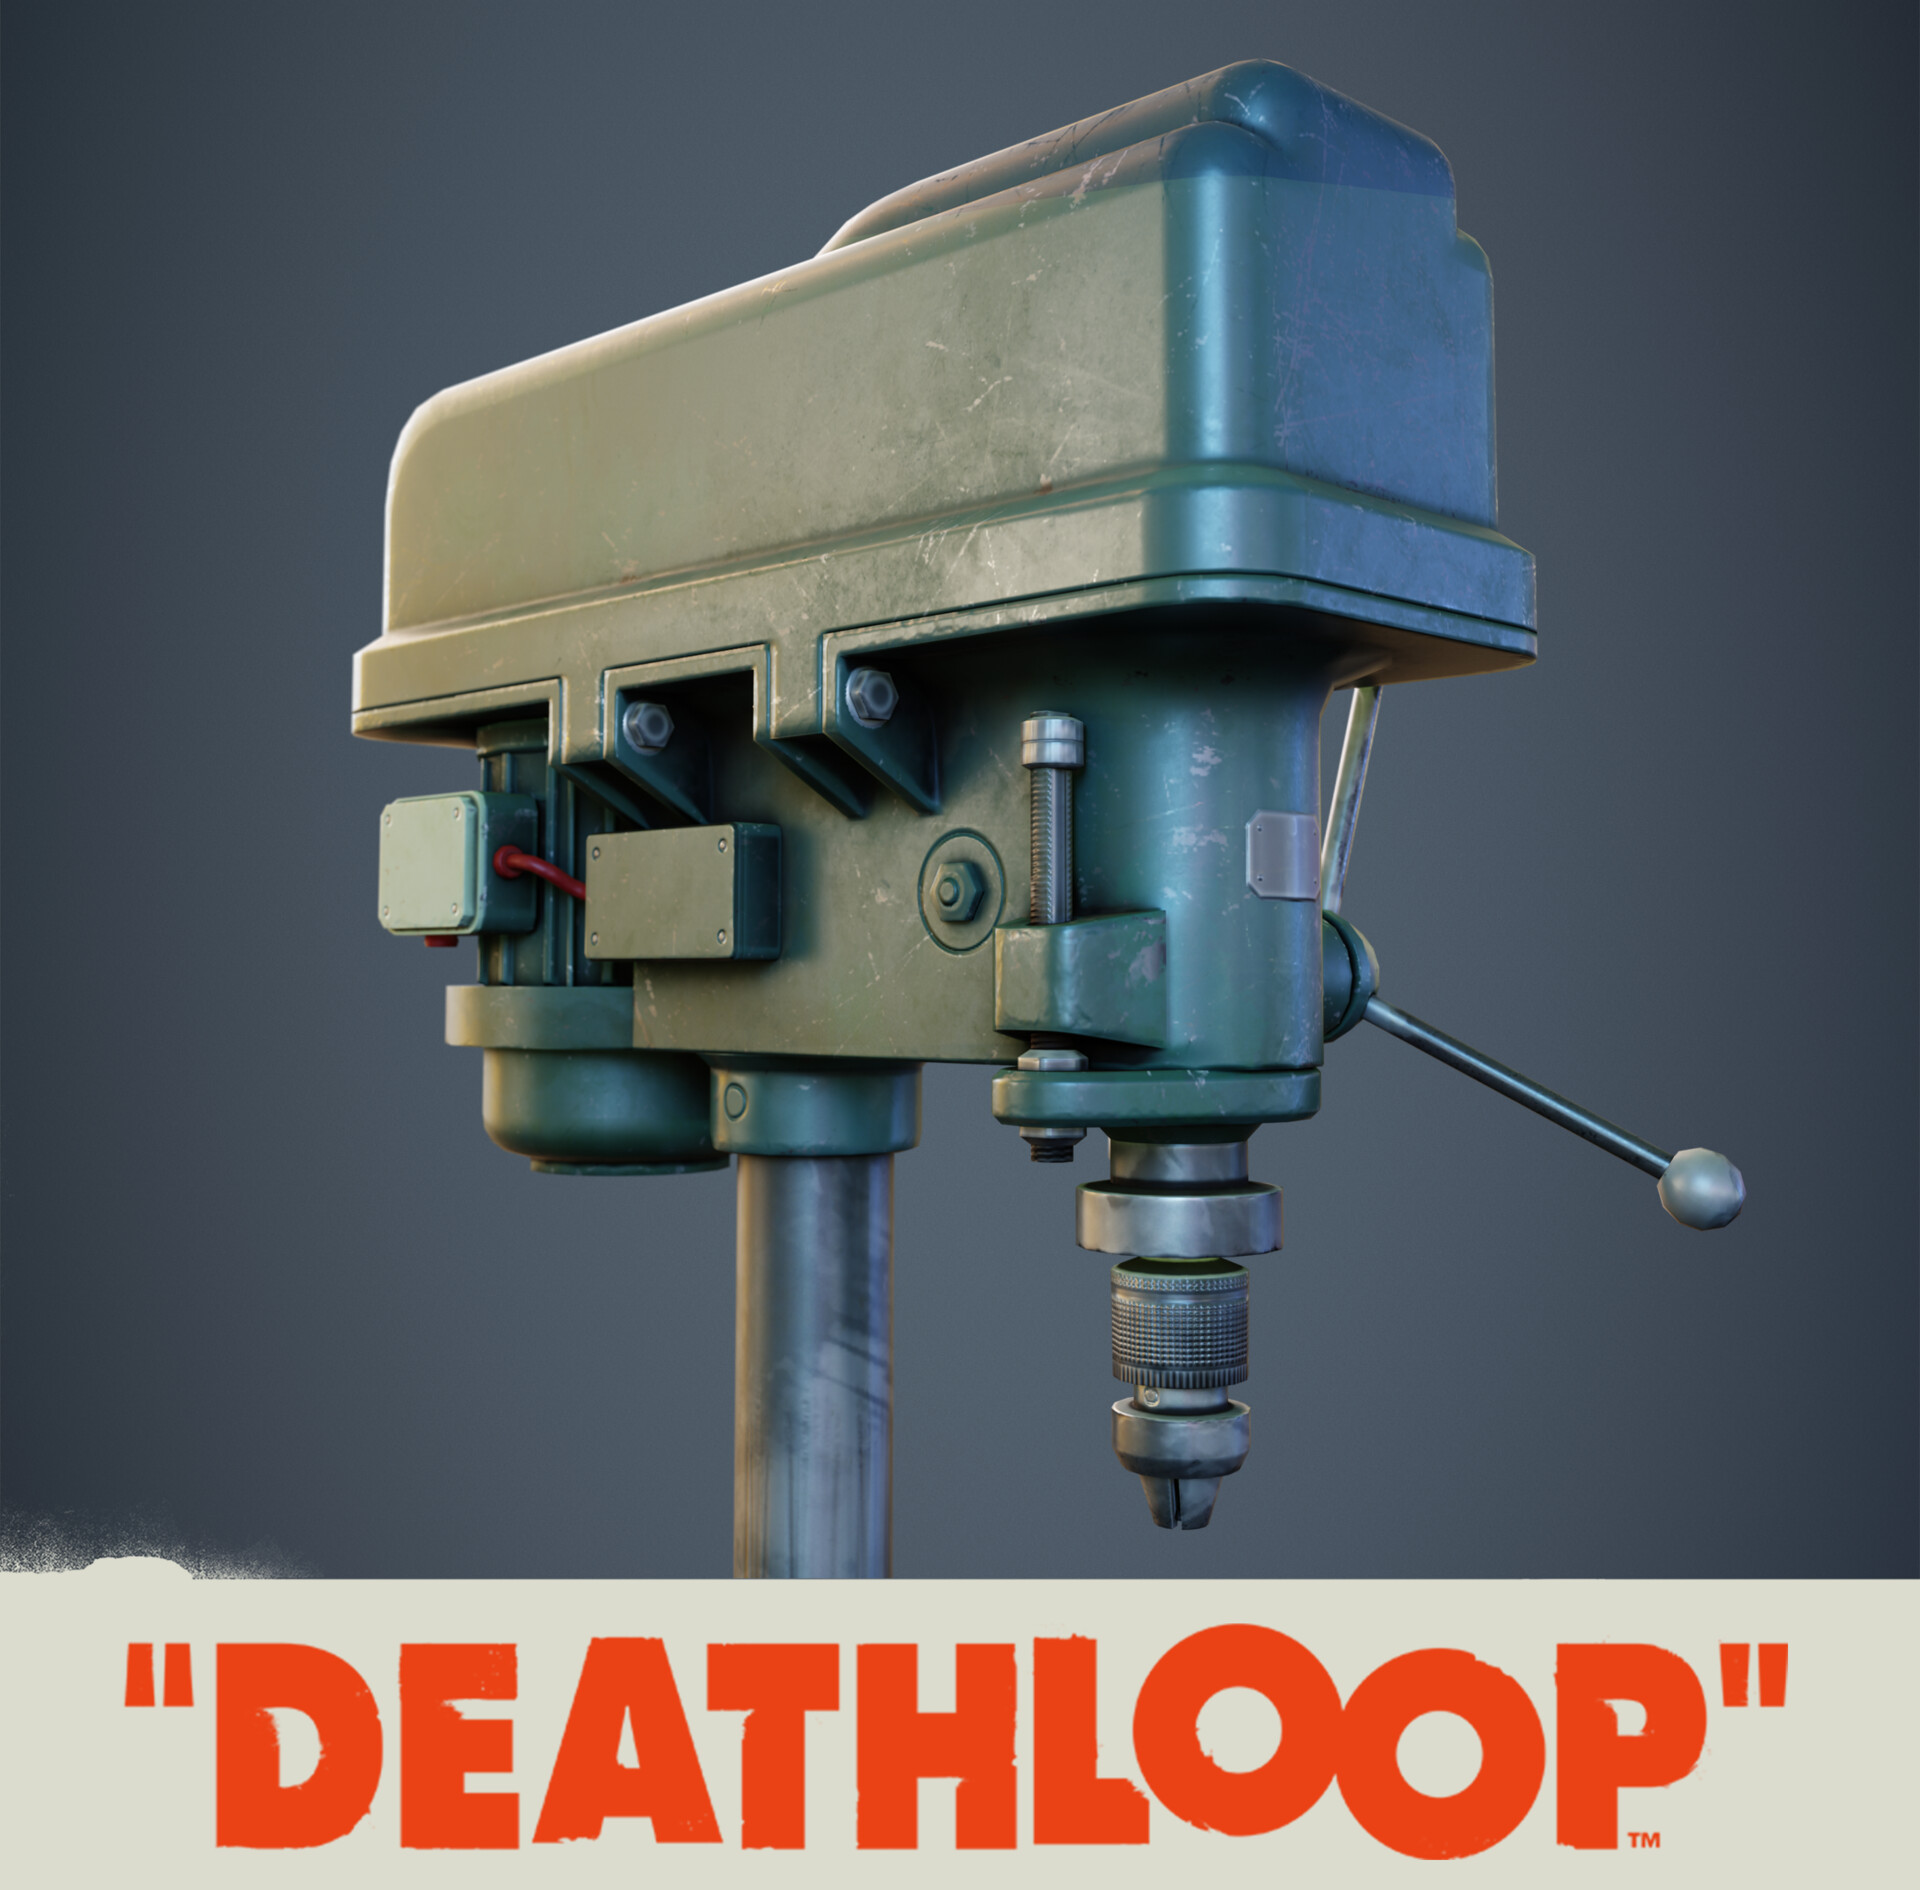 Drill: Deathloop Prop